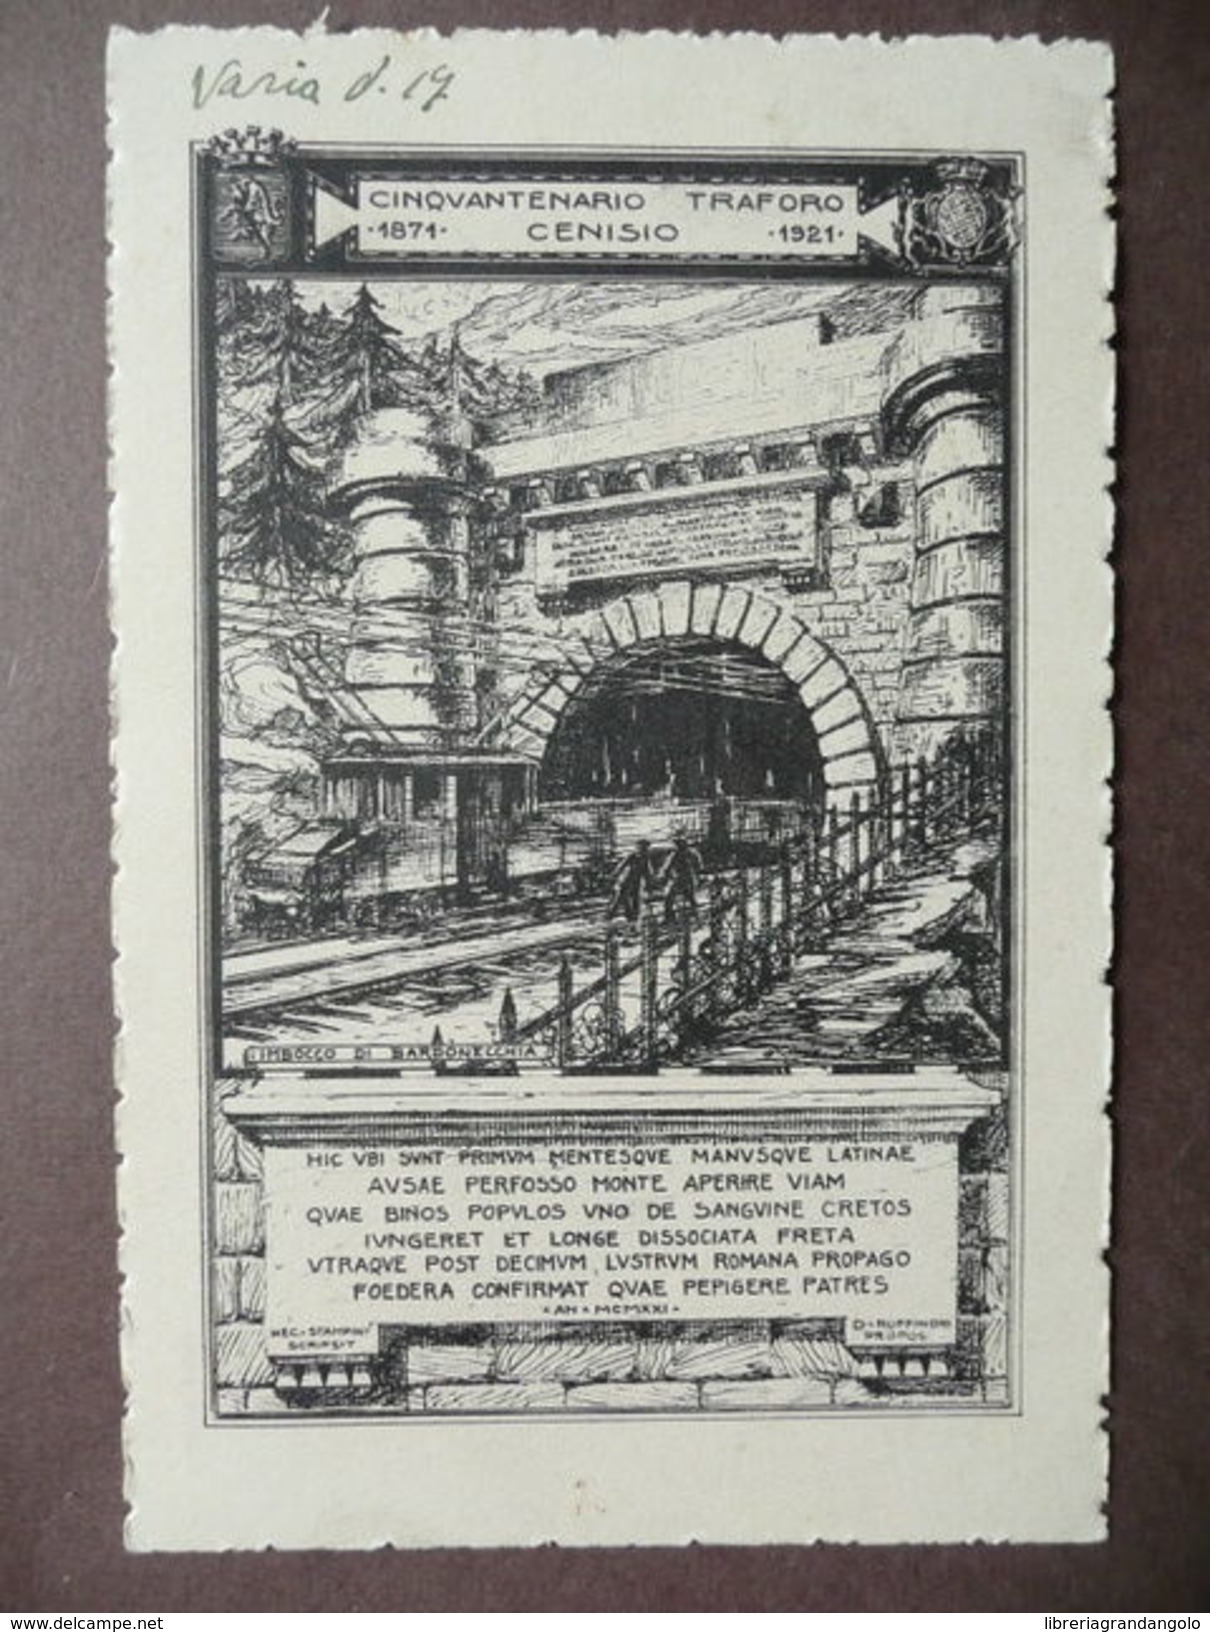 Cartolina Traforo Cenisio Bardonecchia Treno 1871-1921 Stampini Ferrovia Torino - Non Classificati